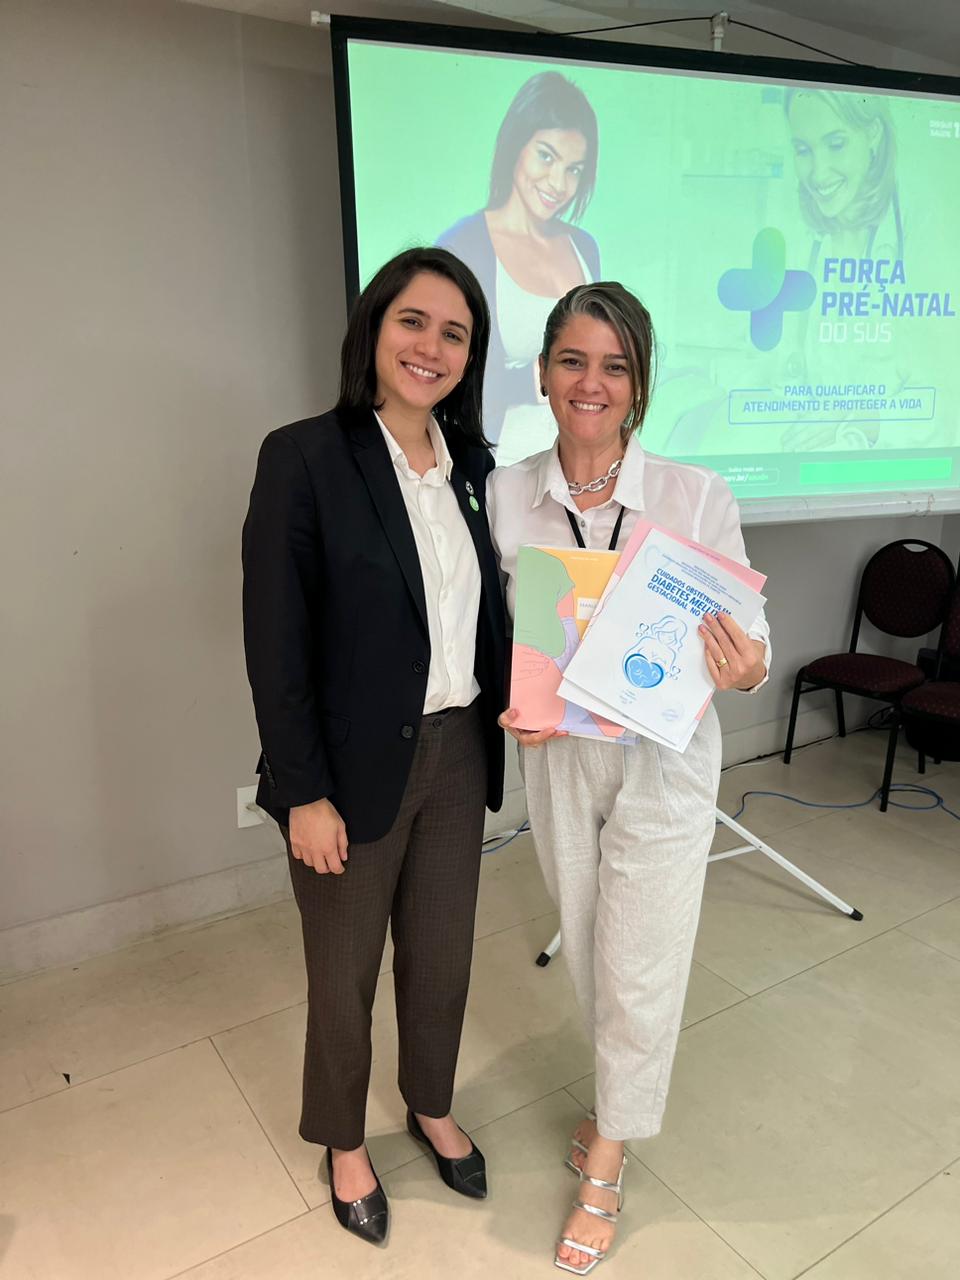 Qualificação do acompanhamento pré-natal: Acre participa de oficina do  Ministério da Saúde em Brasília - Noticias do Acre